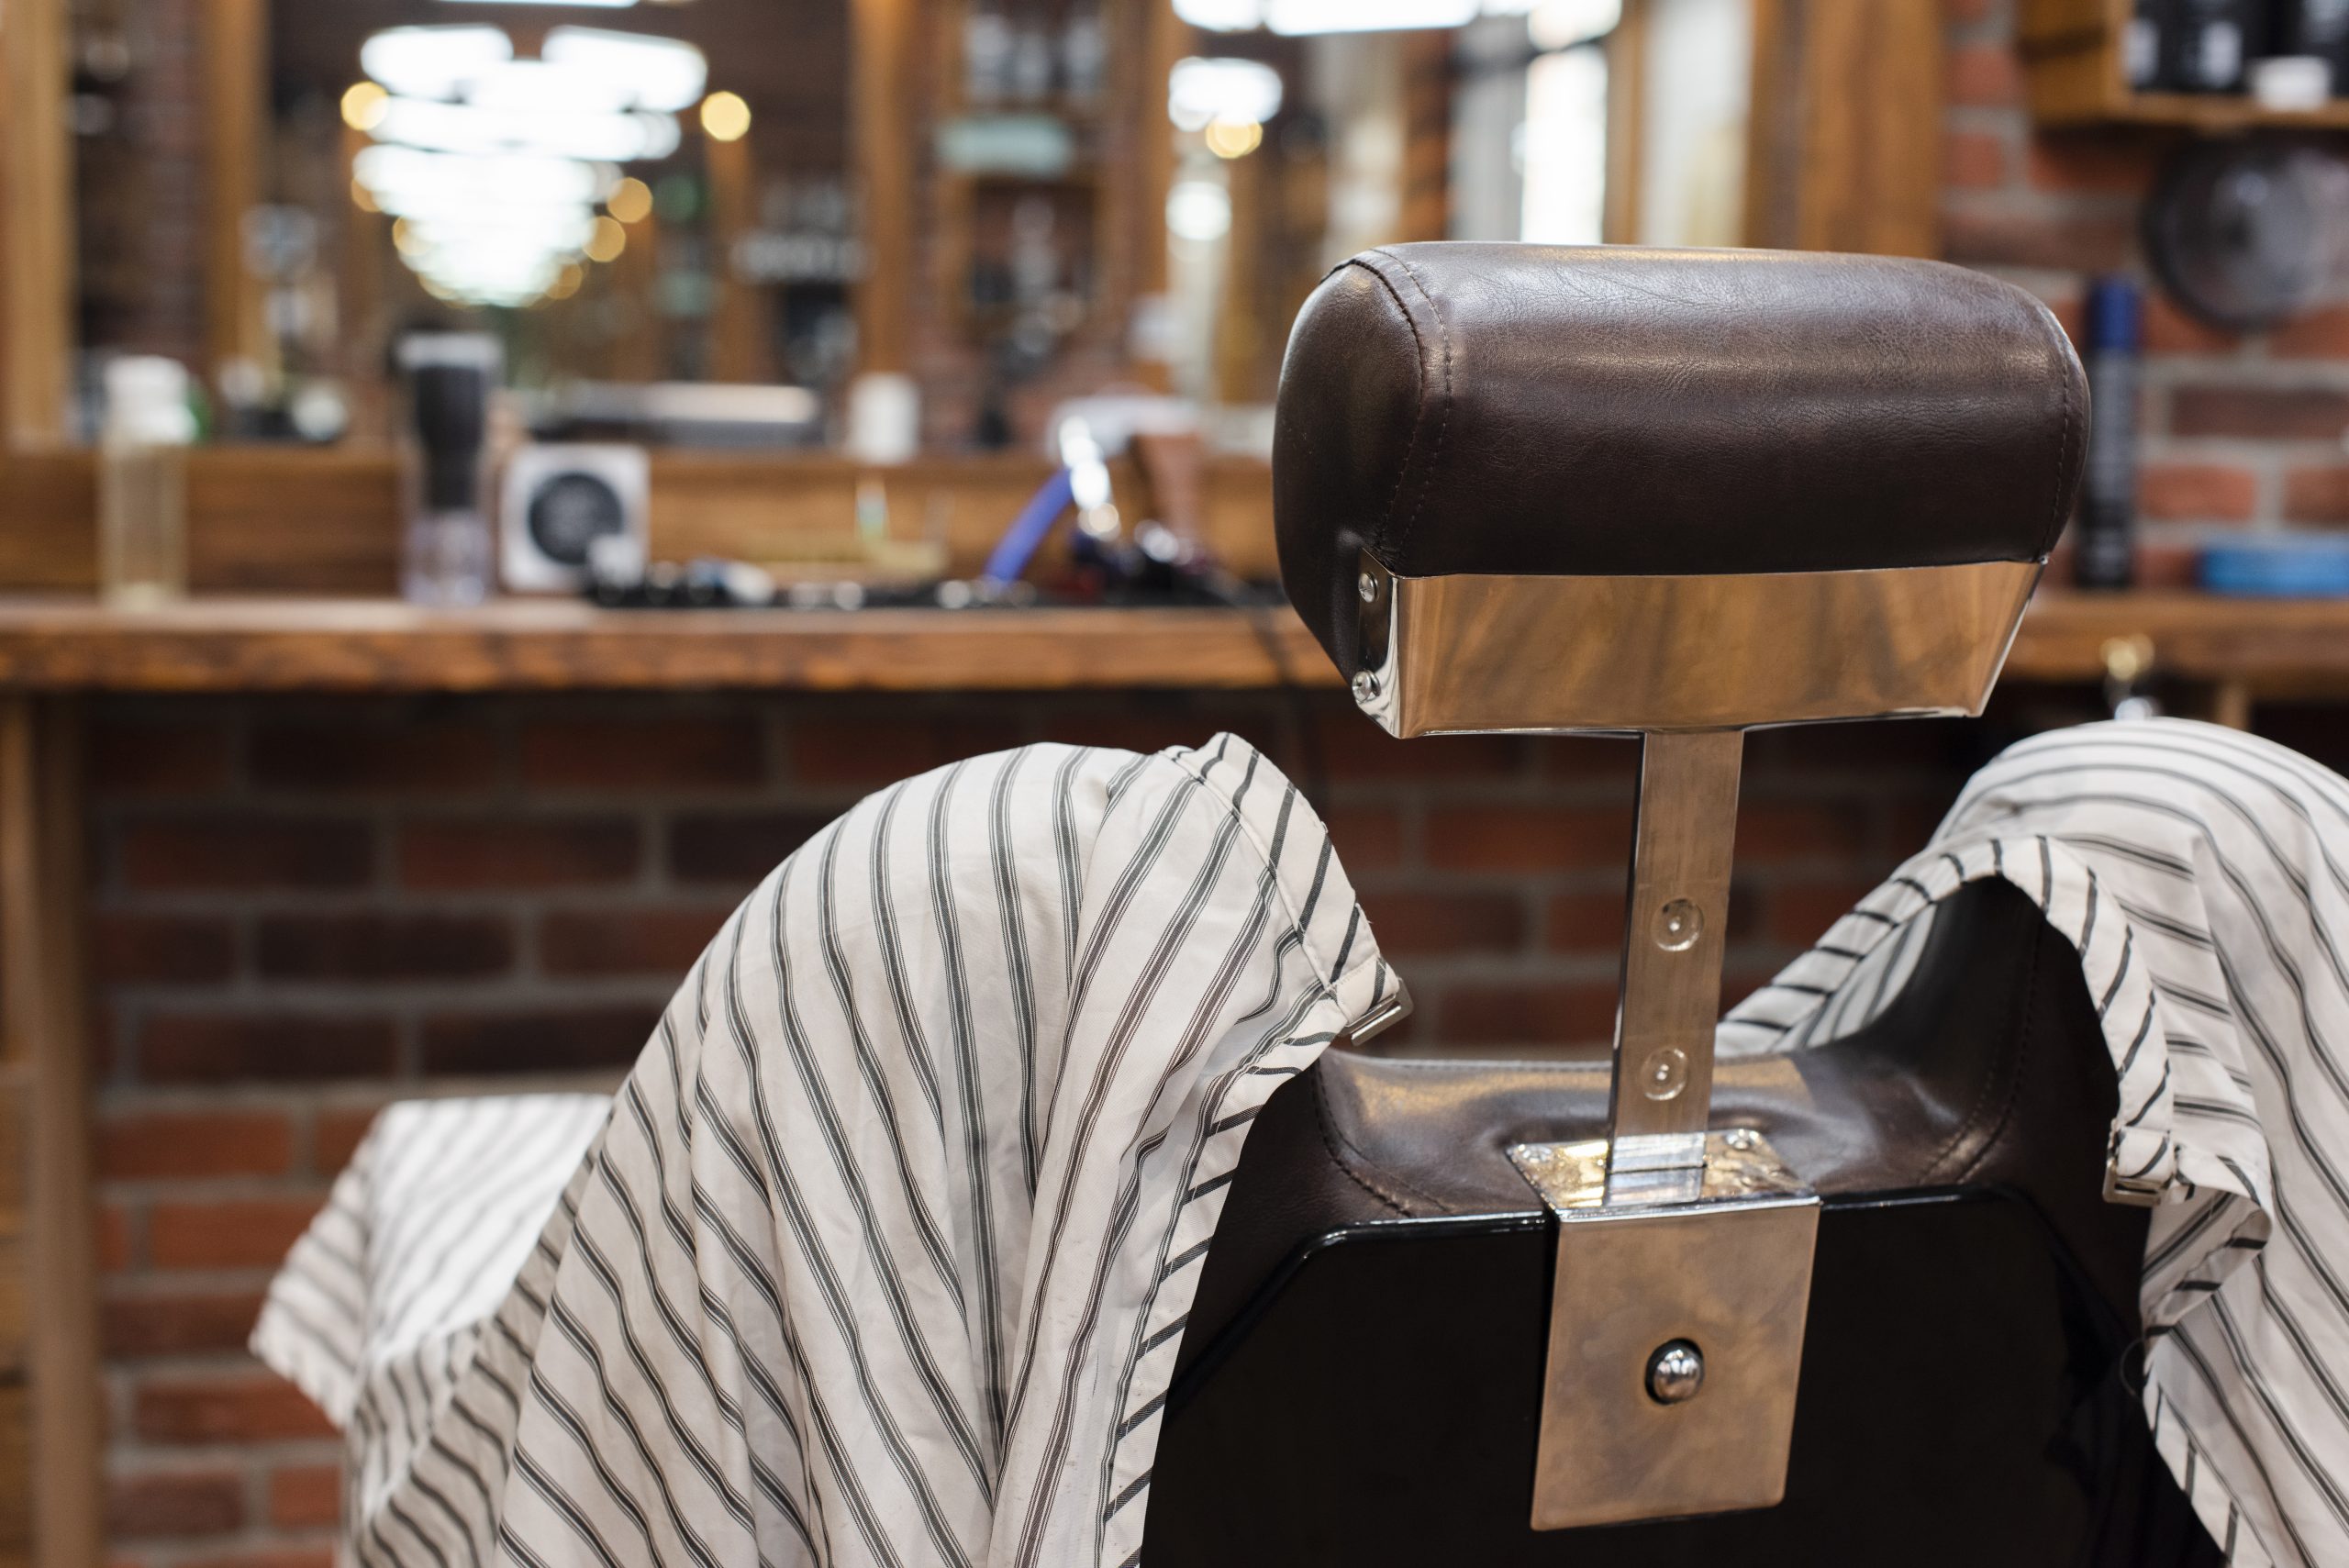 hairdressing-chair-vintage-barber-shop